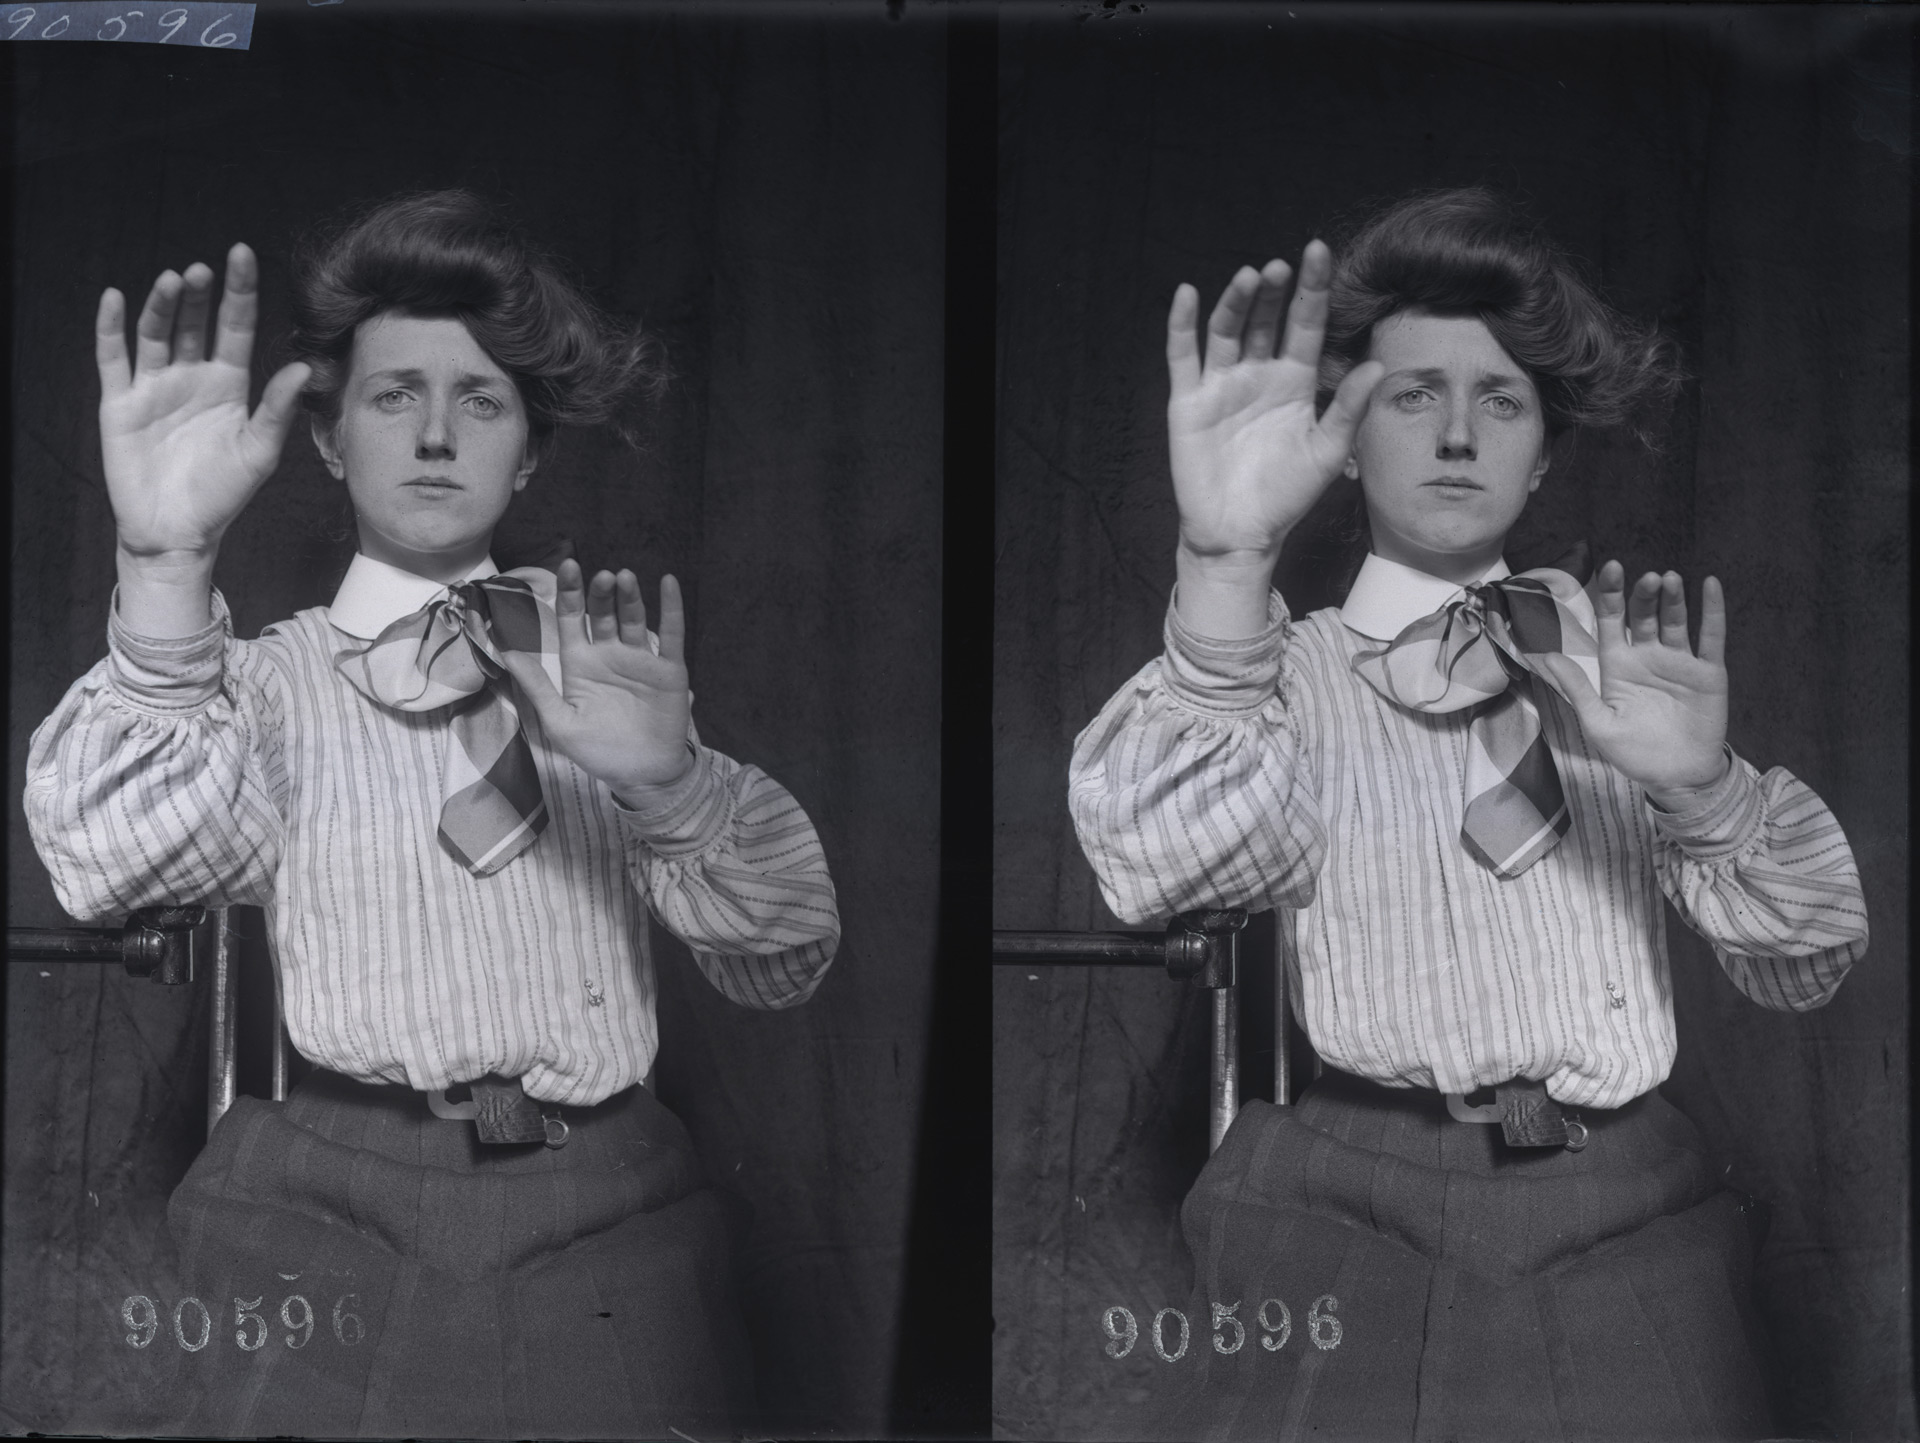 Джозеф Ястроу, эксперименты в области визуального восприятия, c. 1905, Стереографы из стеклянных негативов, Коллекция Keystone-Mast